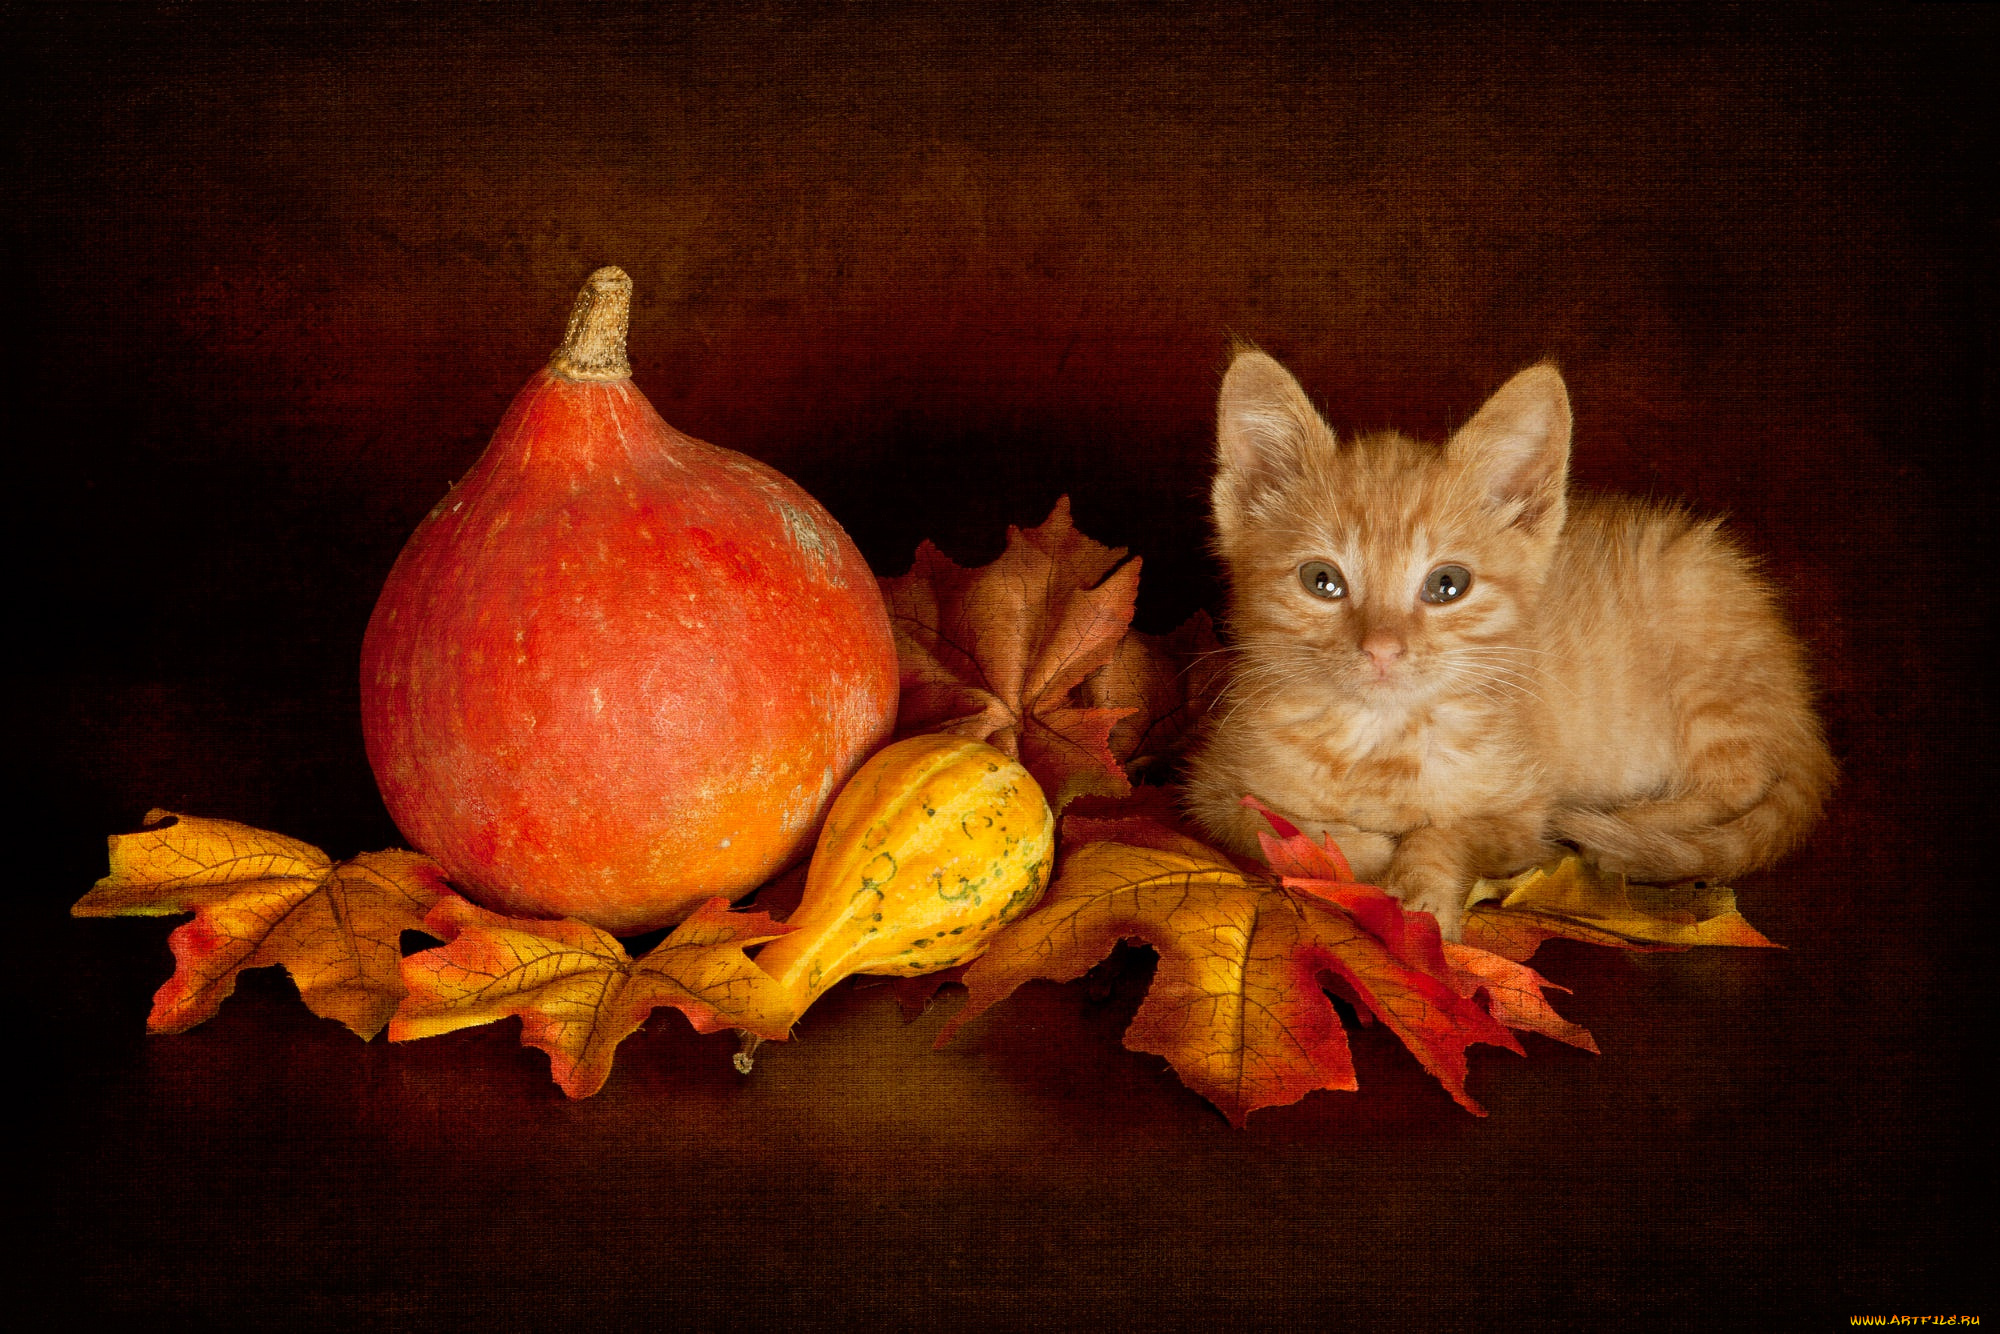 животные, коты, осенний, котёнок, натюрморт, лежит, тыква, тыквы, урожай, котенок, мордочка, темный, фон, поза, осень, малыш, рыжий, листья, взгляд, кошка